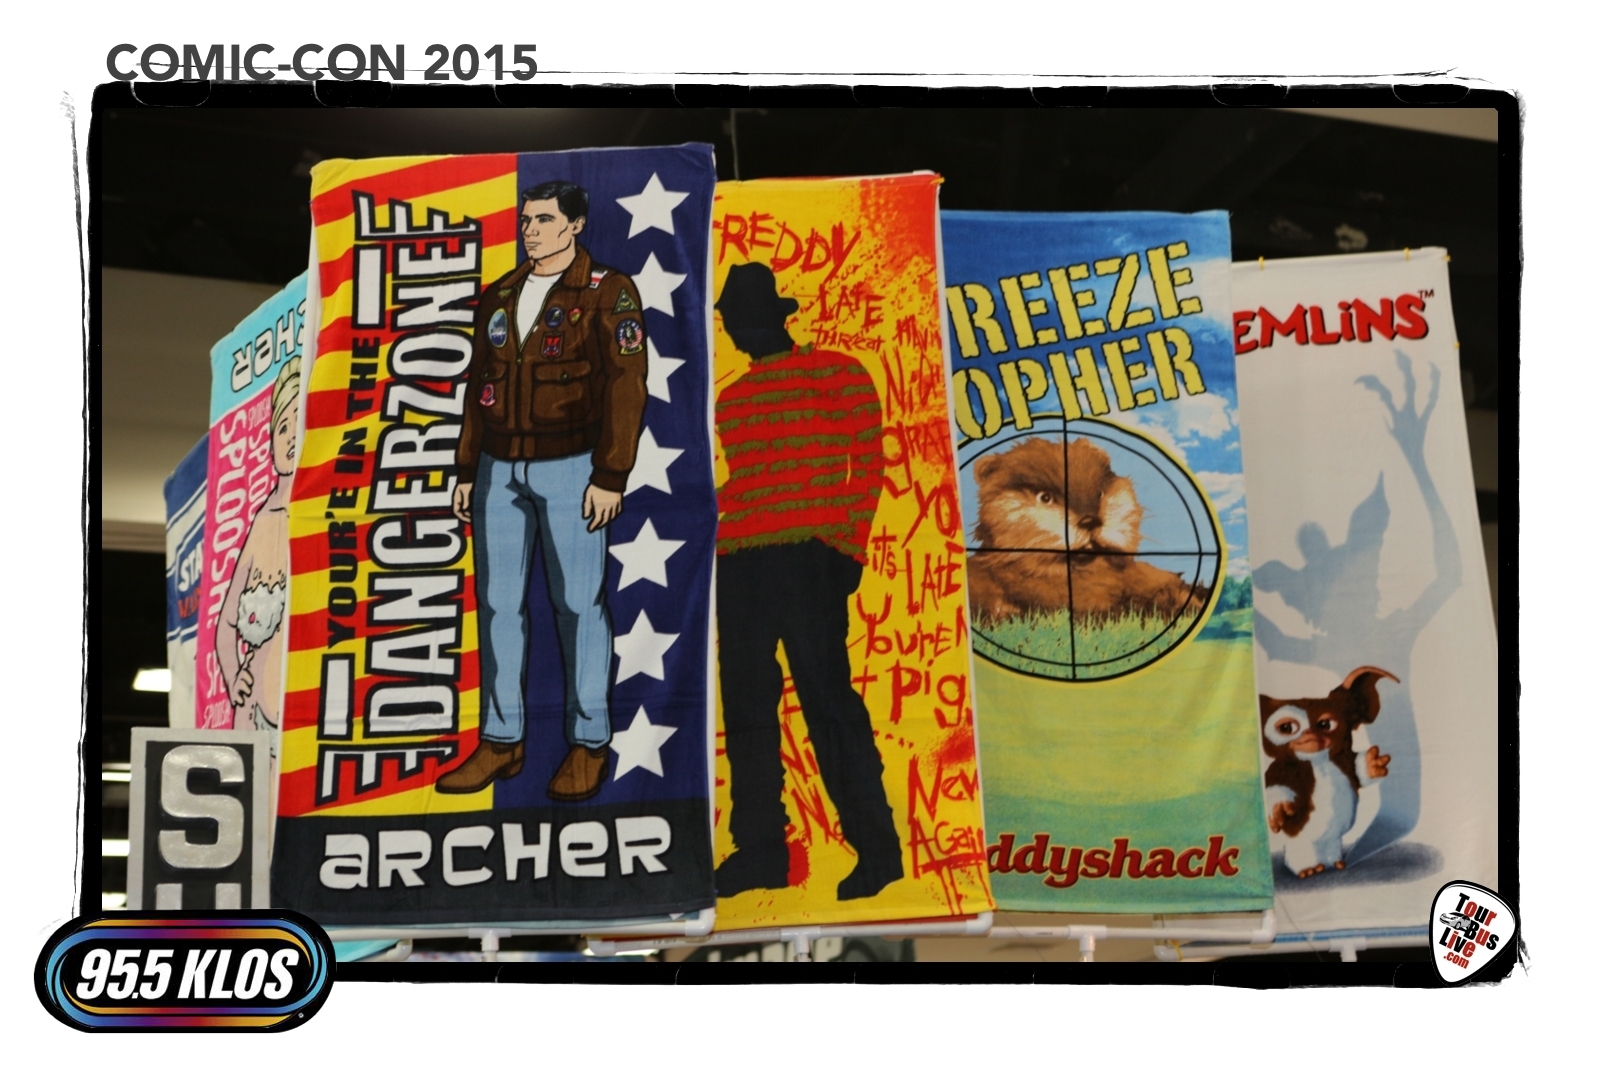 Comic-Con International 2015, San Diego CA. © 2015 TourBusLive.com.